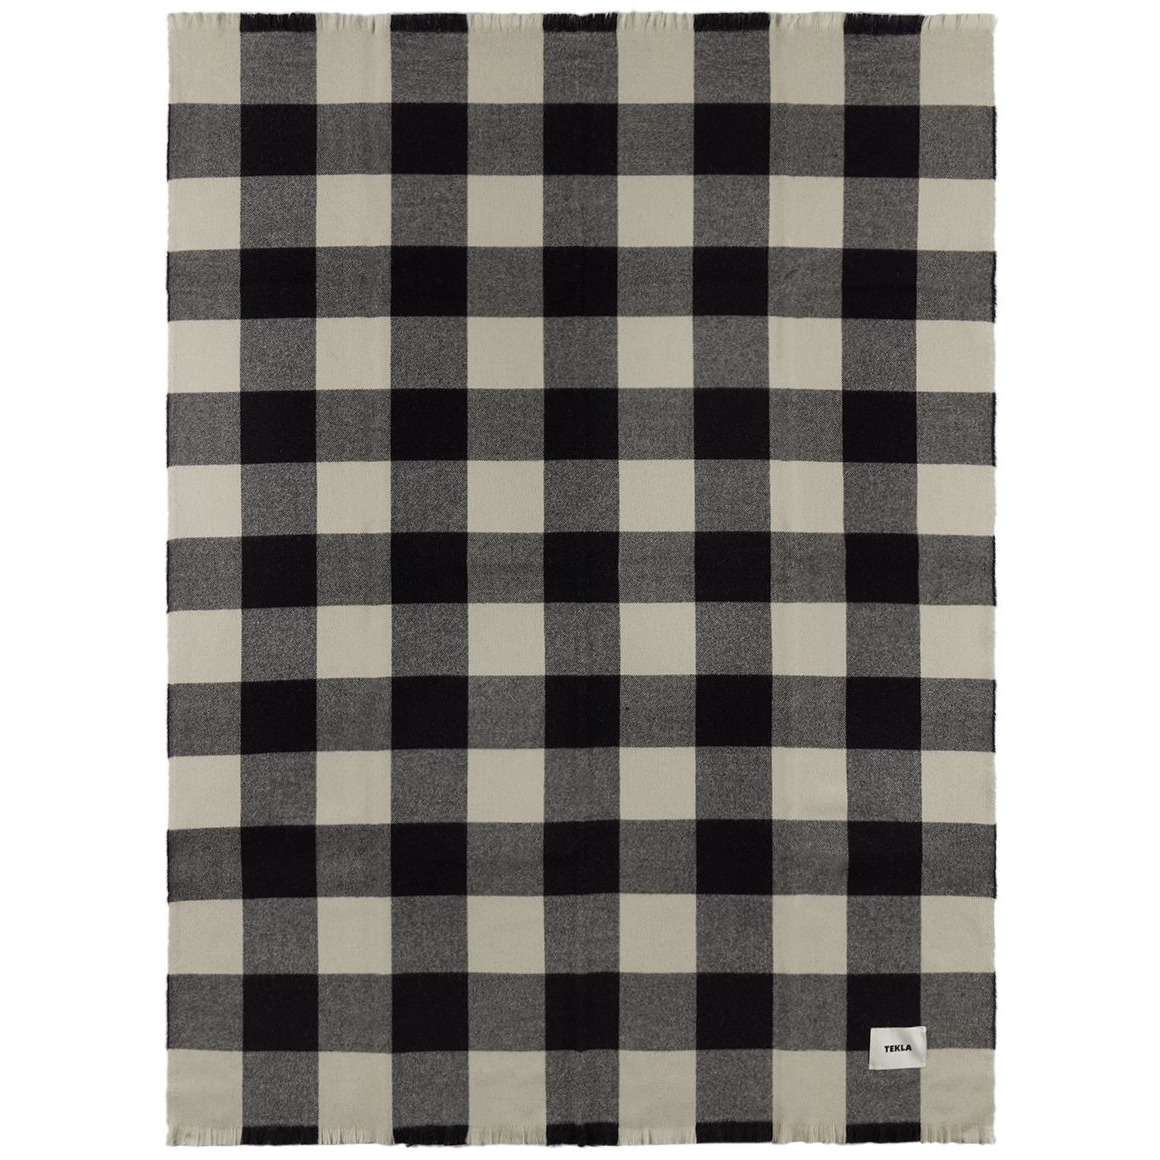 Tekla Black & White Gingham Blanket - image 1